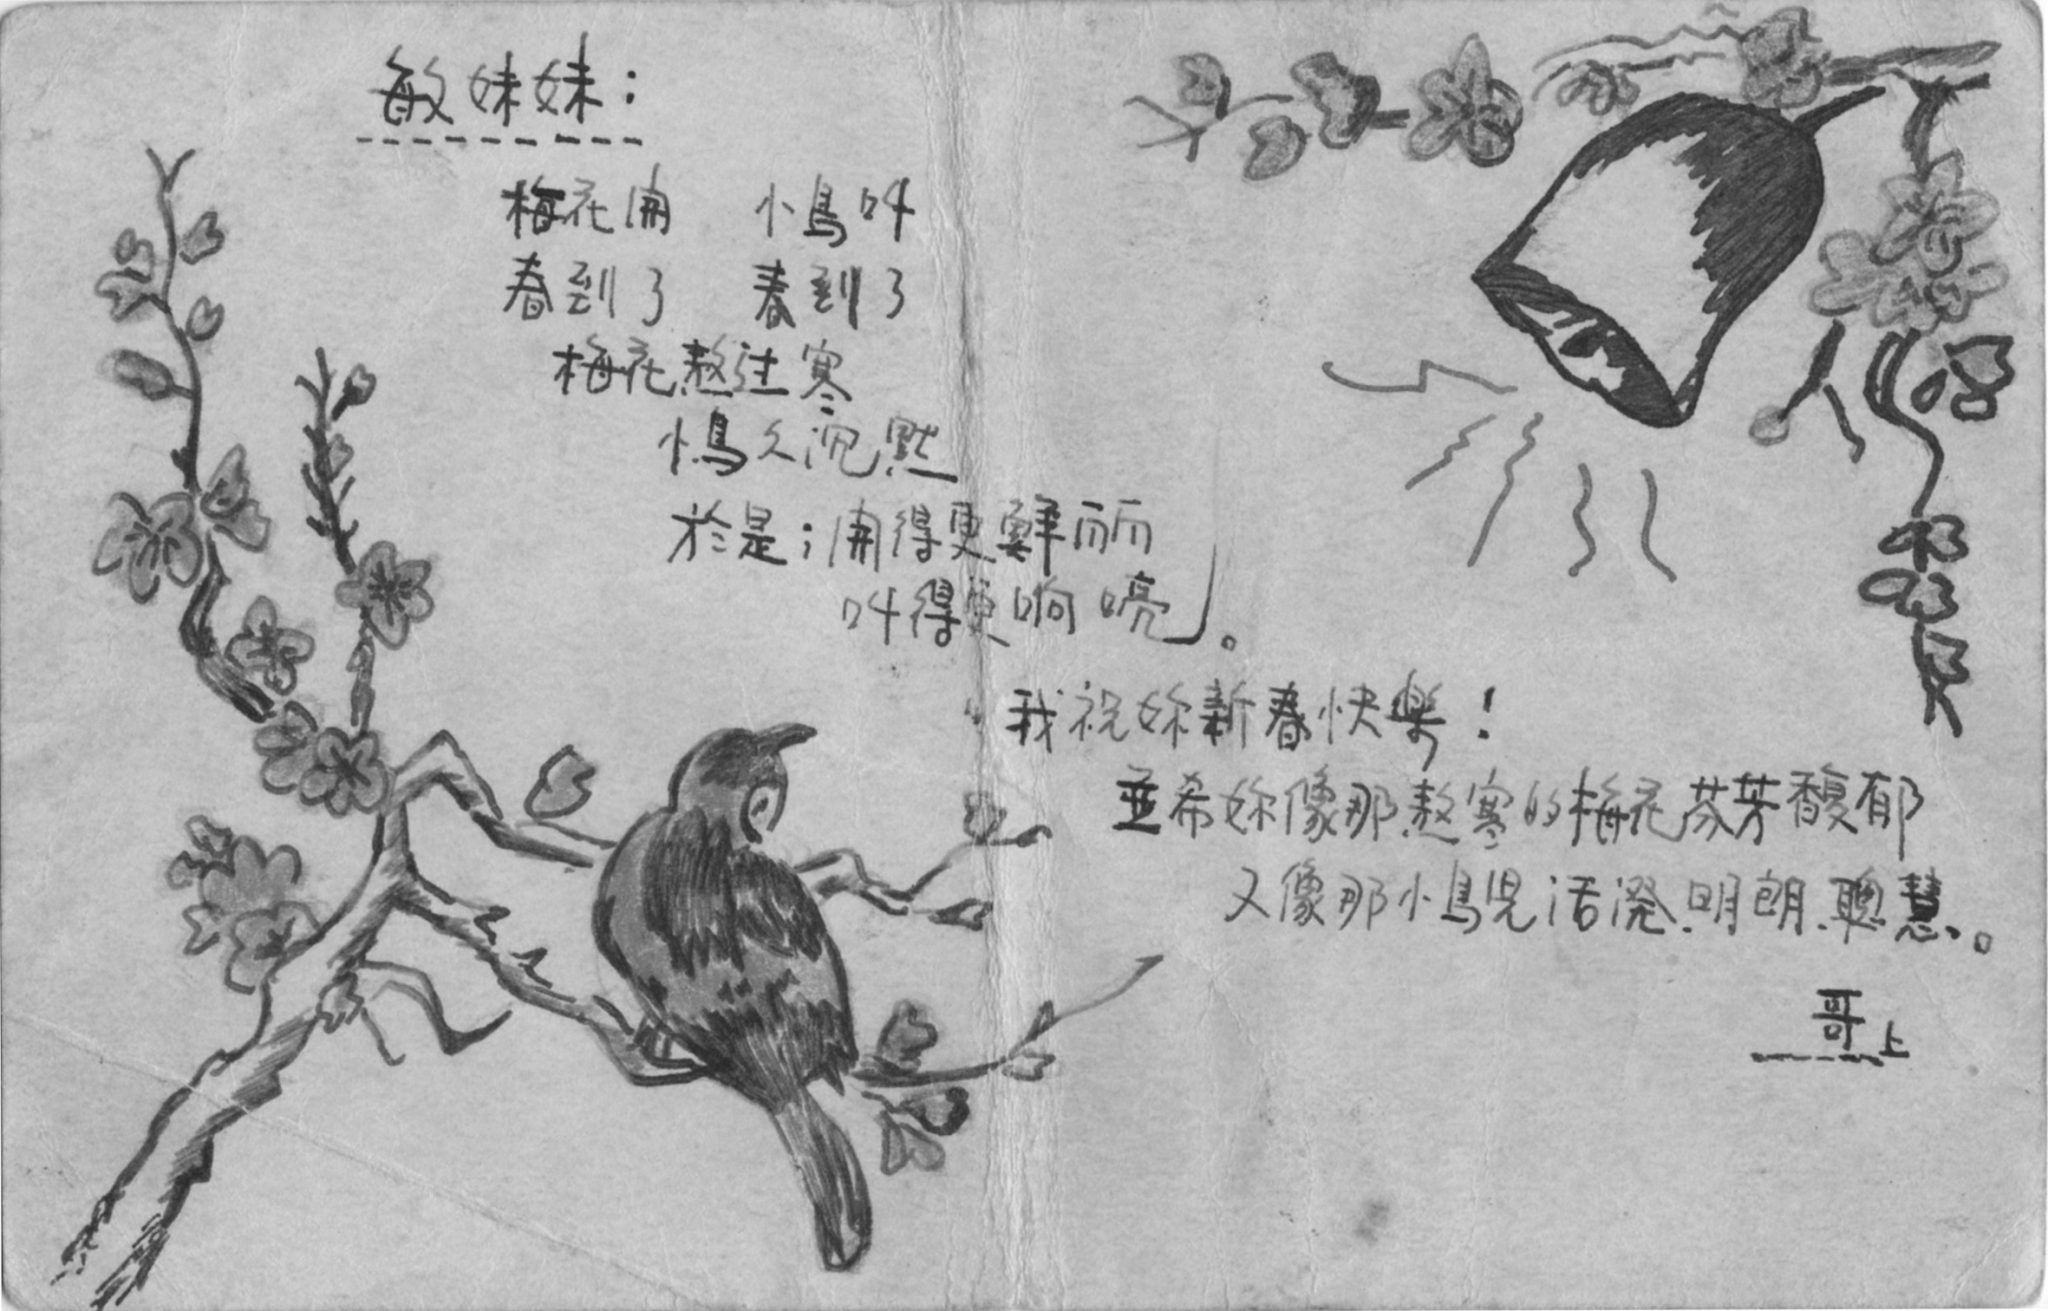 蔡鐵城在監獄期間，寄給妹妹蔡敏的明信片。